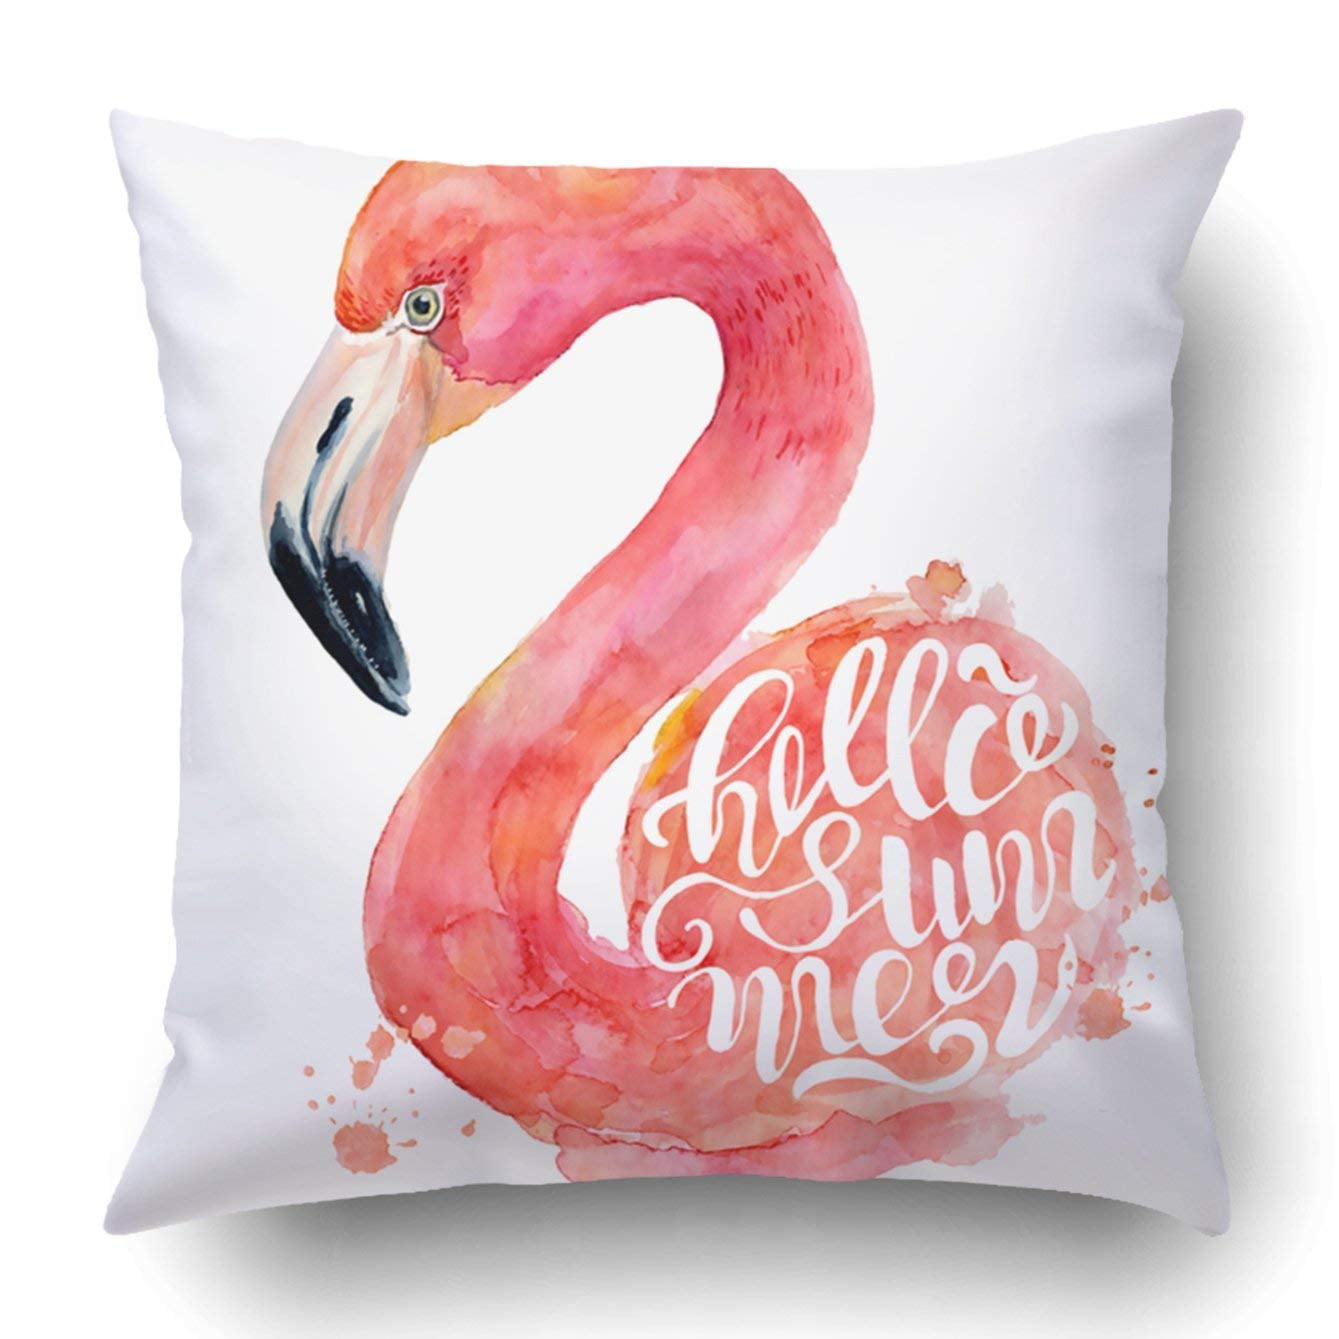 Animal Collection Bird Horse Flamingo Cushion Cover Home Decor Throw Pillow Case 